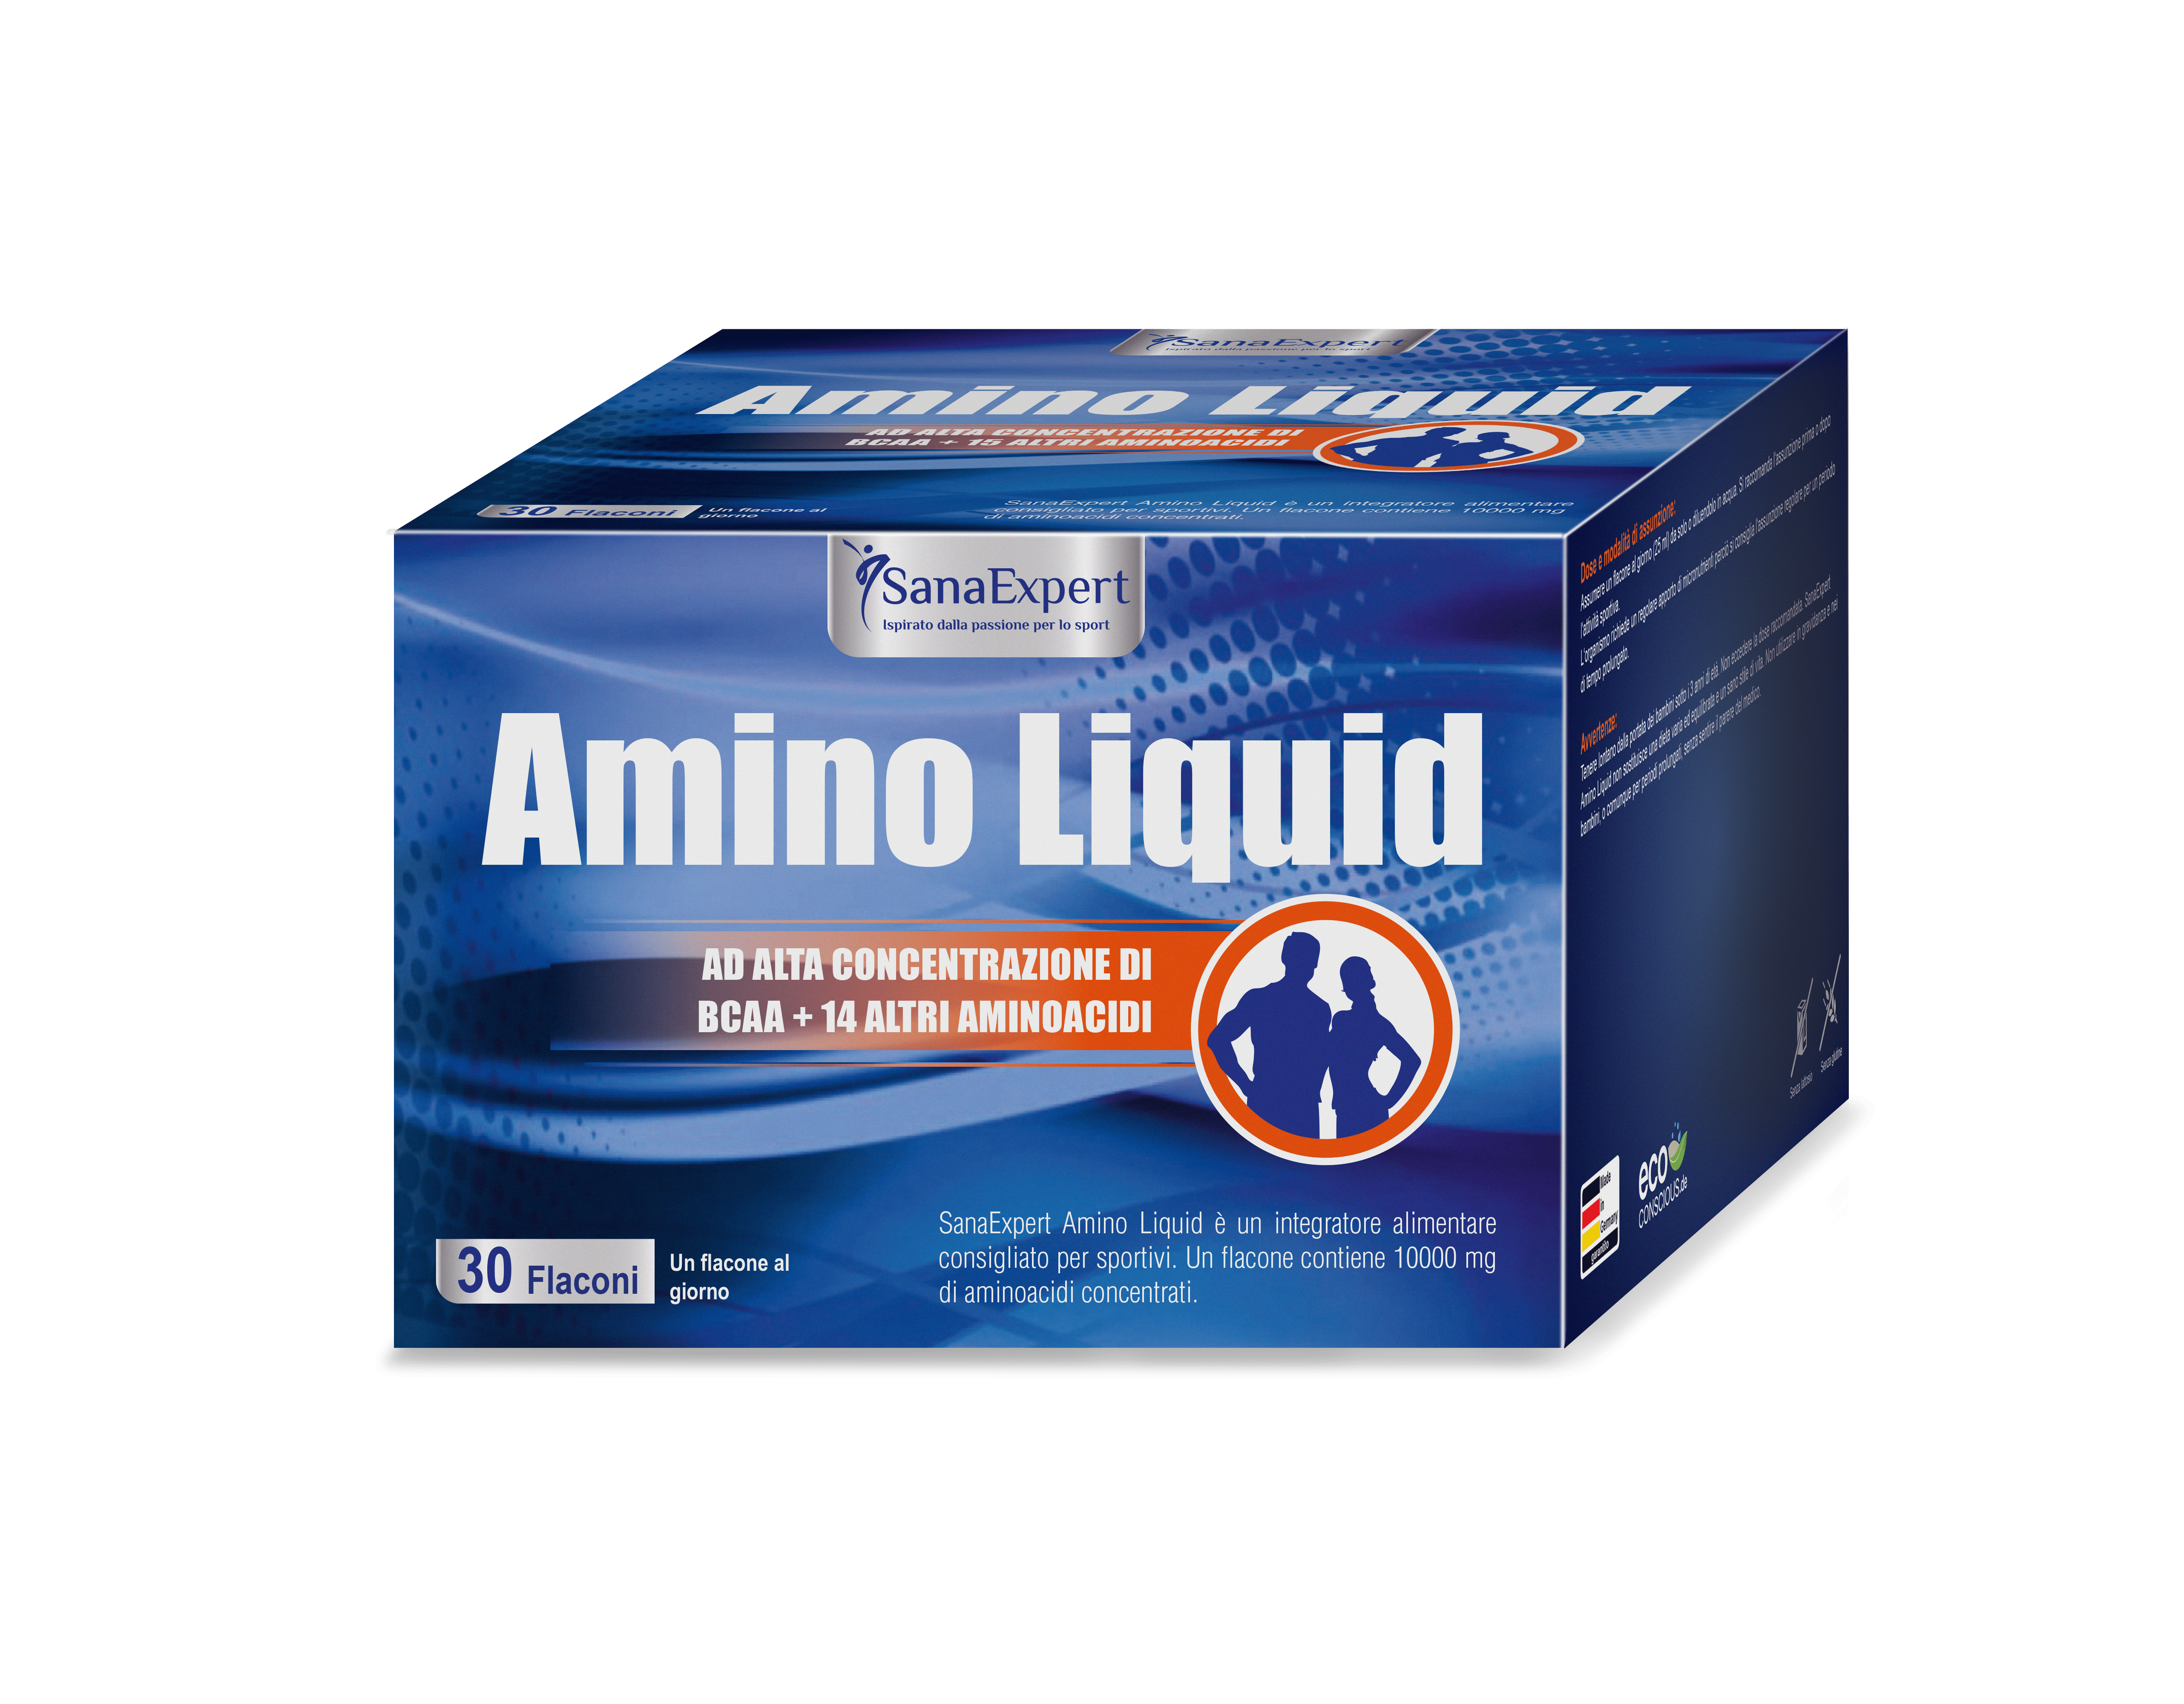 SanaExpert Amino Liquid